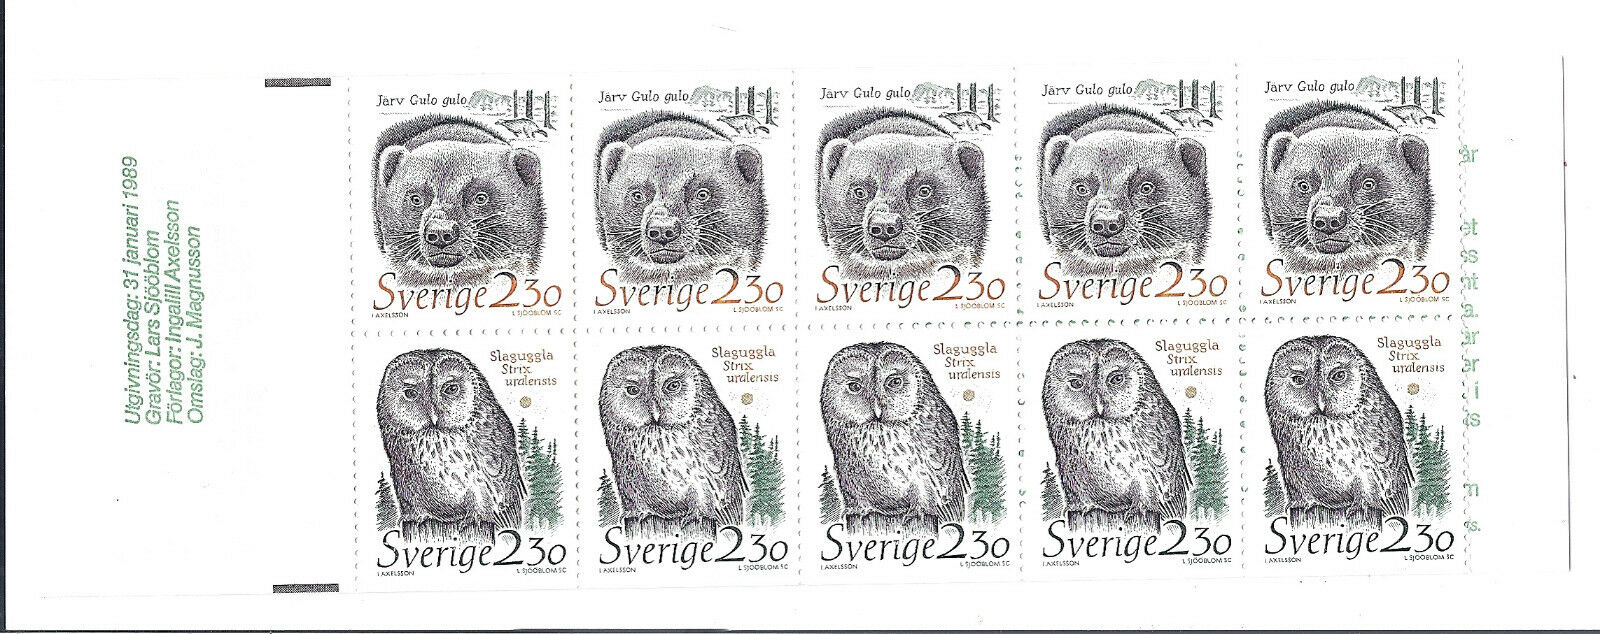 Suedia 1989 - Fauna, carnet filatelic neuzat